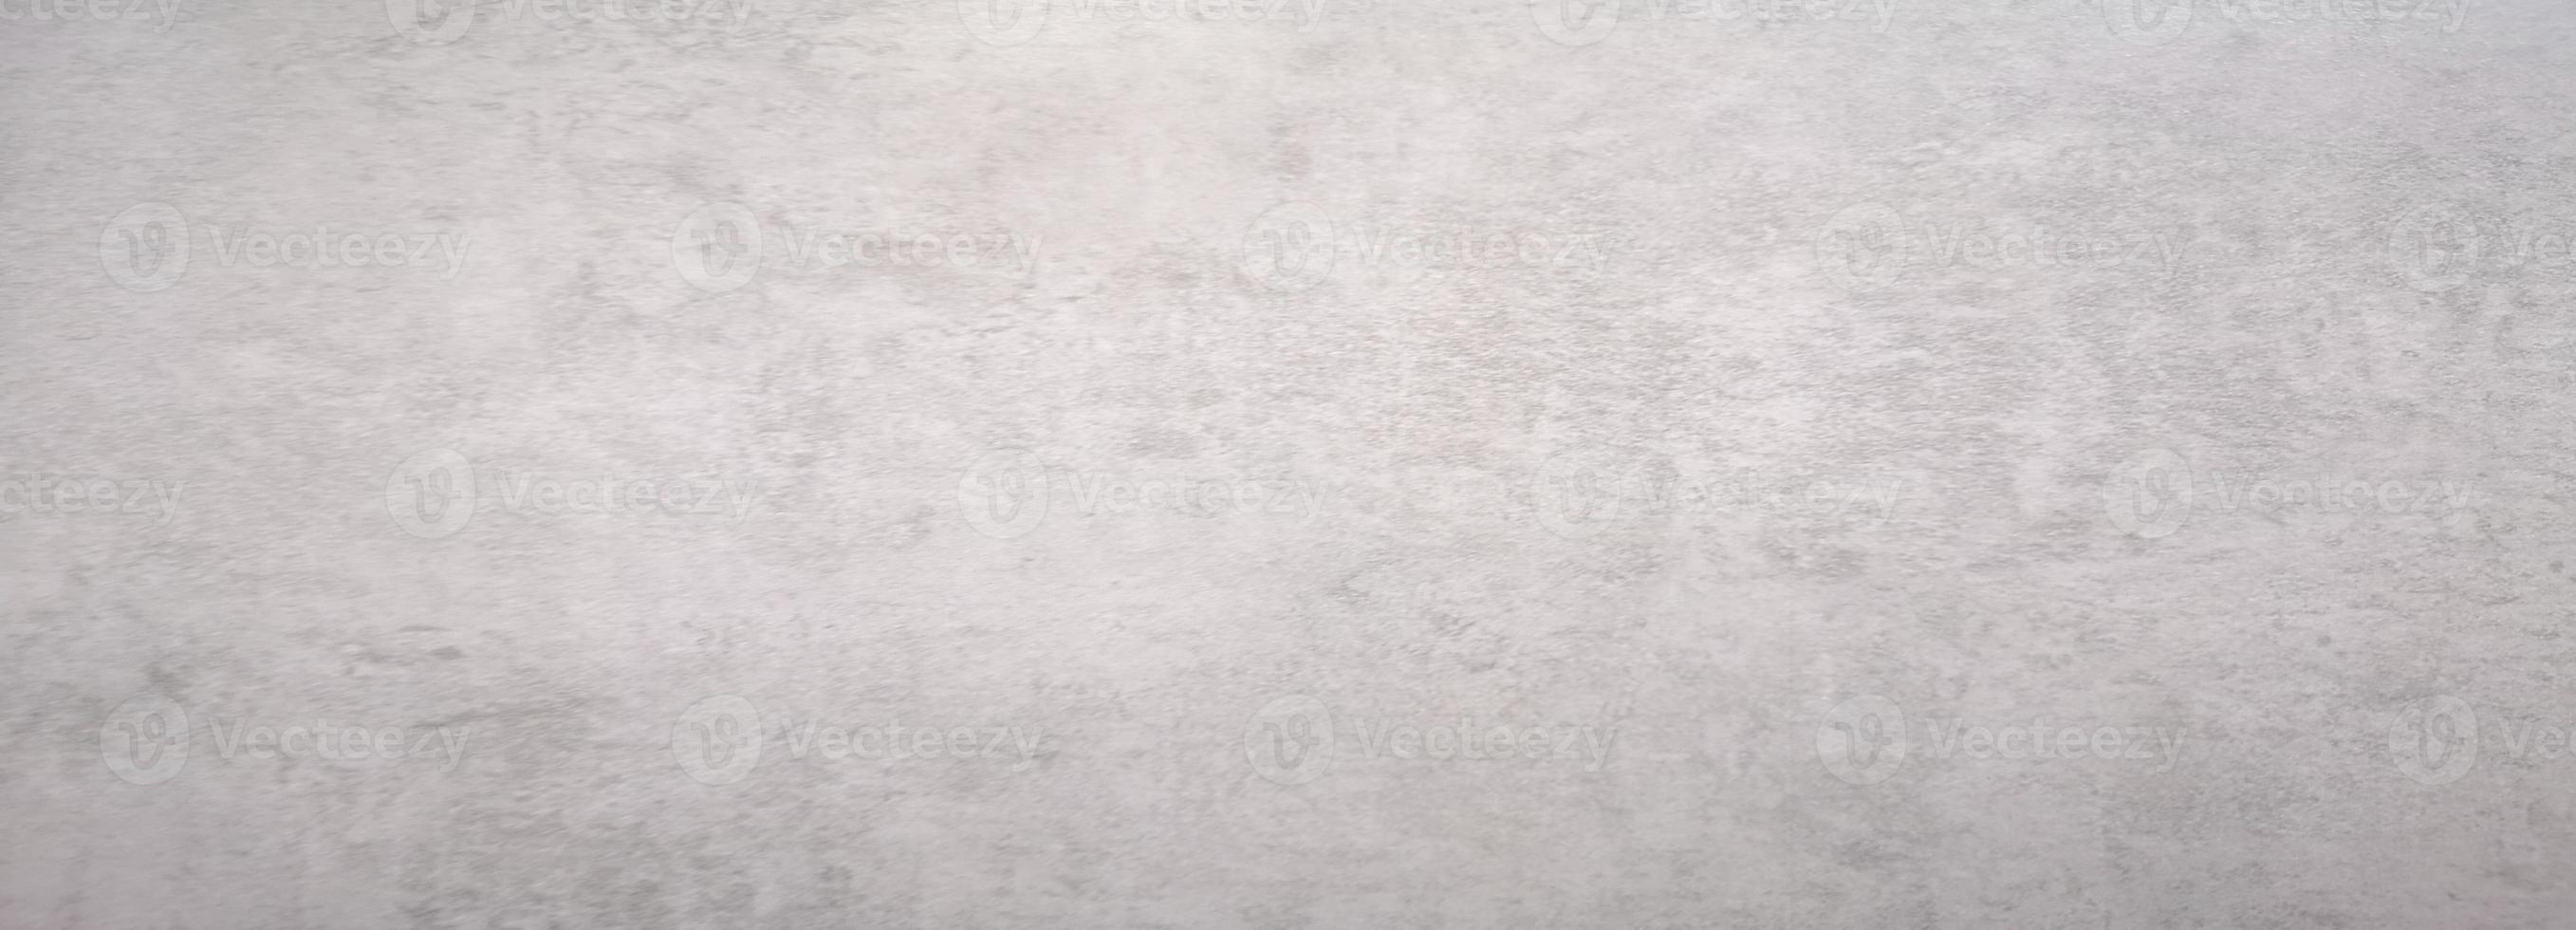 grunge abstrait et technique rayée mur de béton de couleur grise, fond de texture de matériau de surface lisse de ciment, vintage de style loft, toile de fond rétro, intérieur de plancher de construction, architecte photo